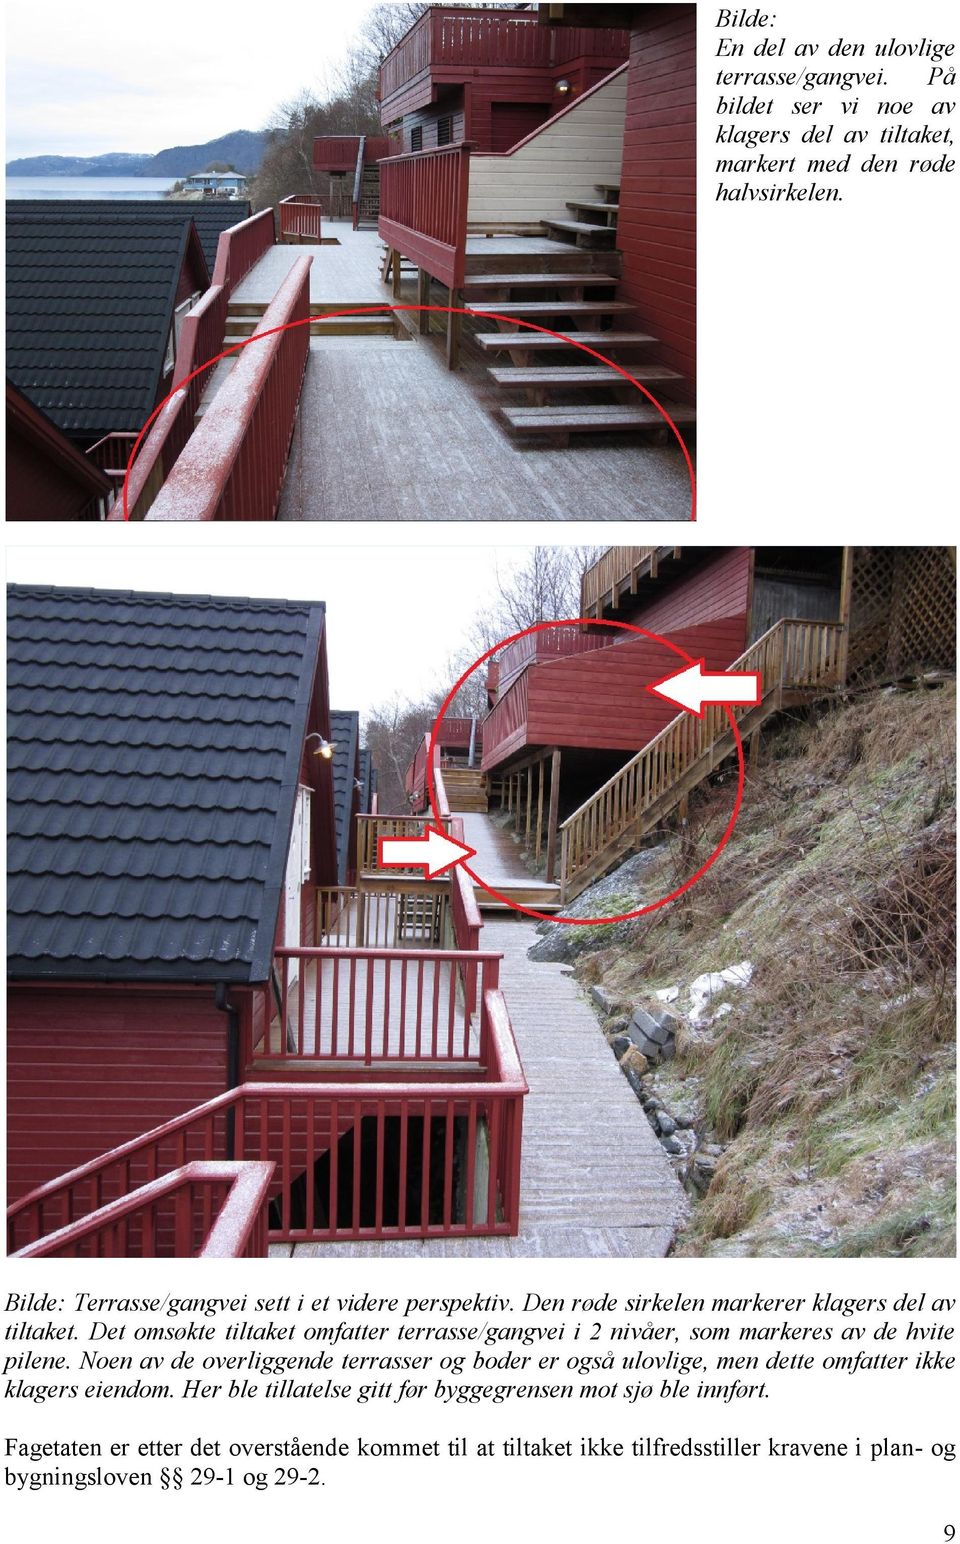 Det omsøkte tiltaket omfatter terrasse/gangvei i 2 nivåer, som markeres av de hvite pilene.